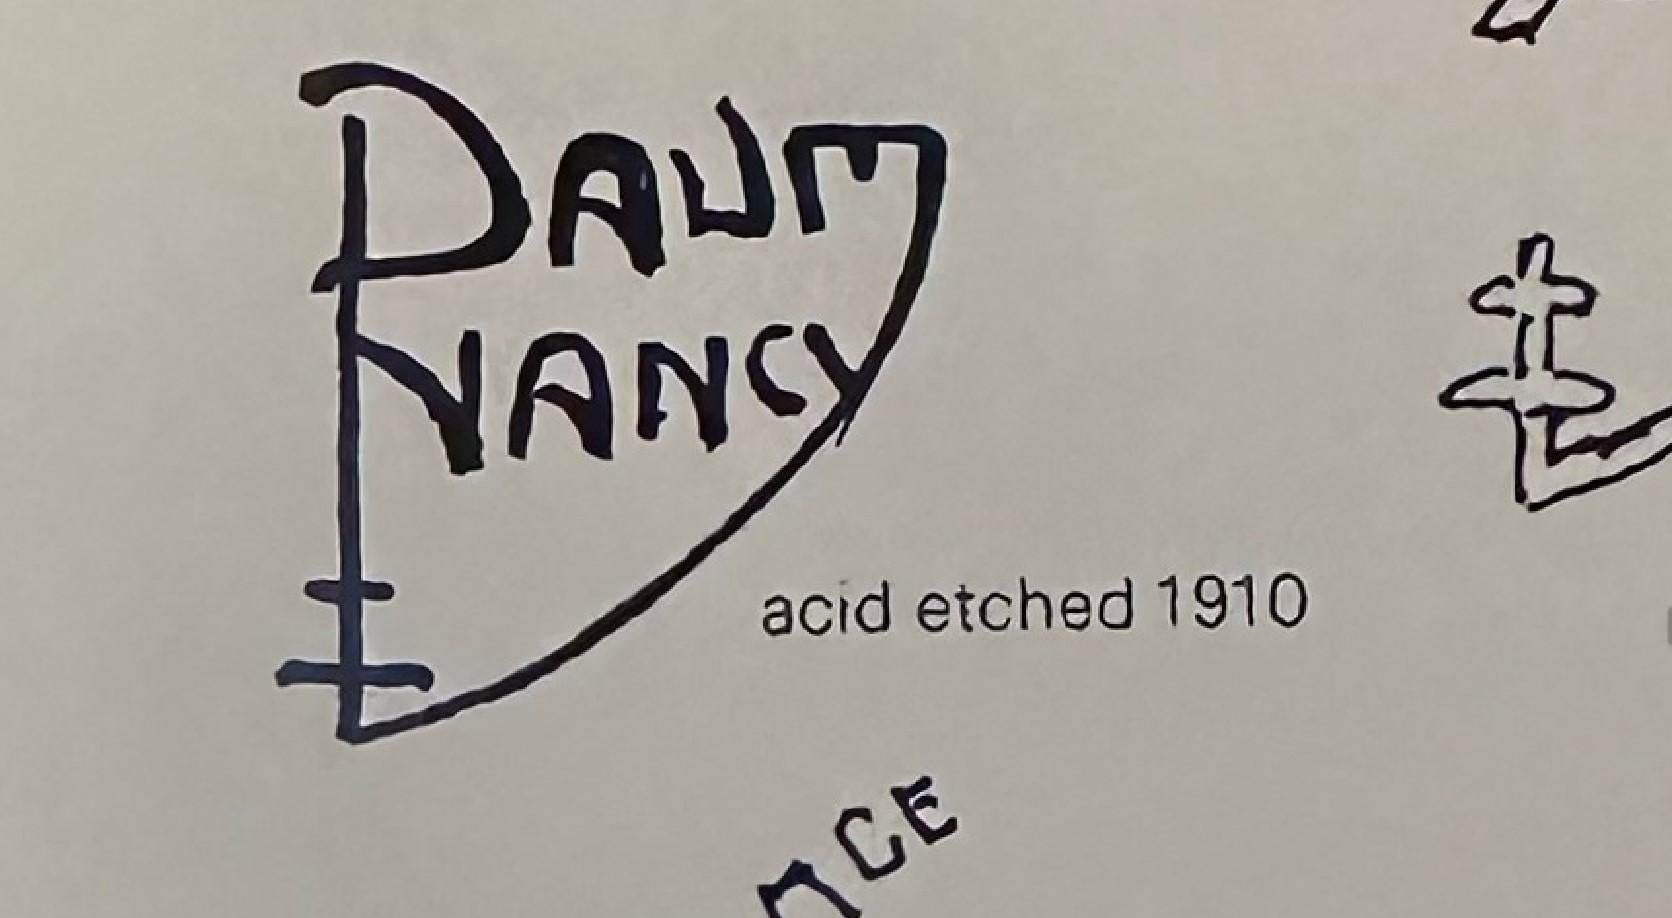 daum nancy signature